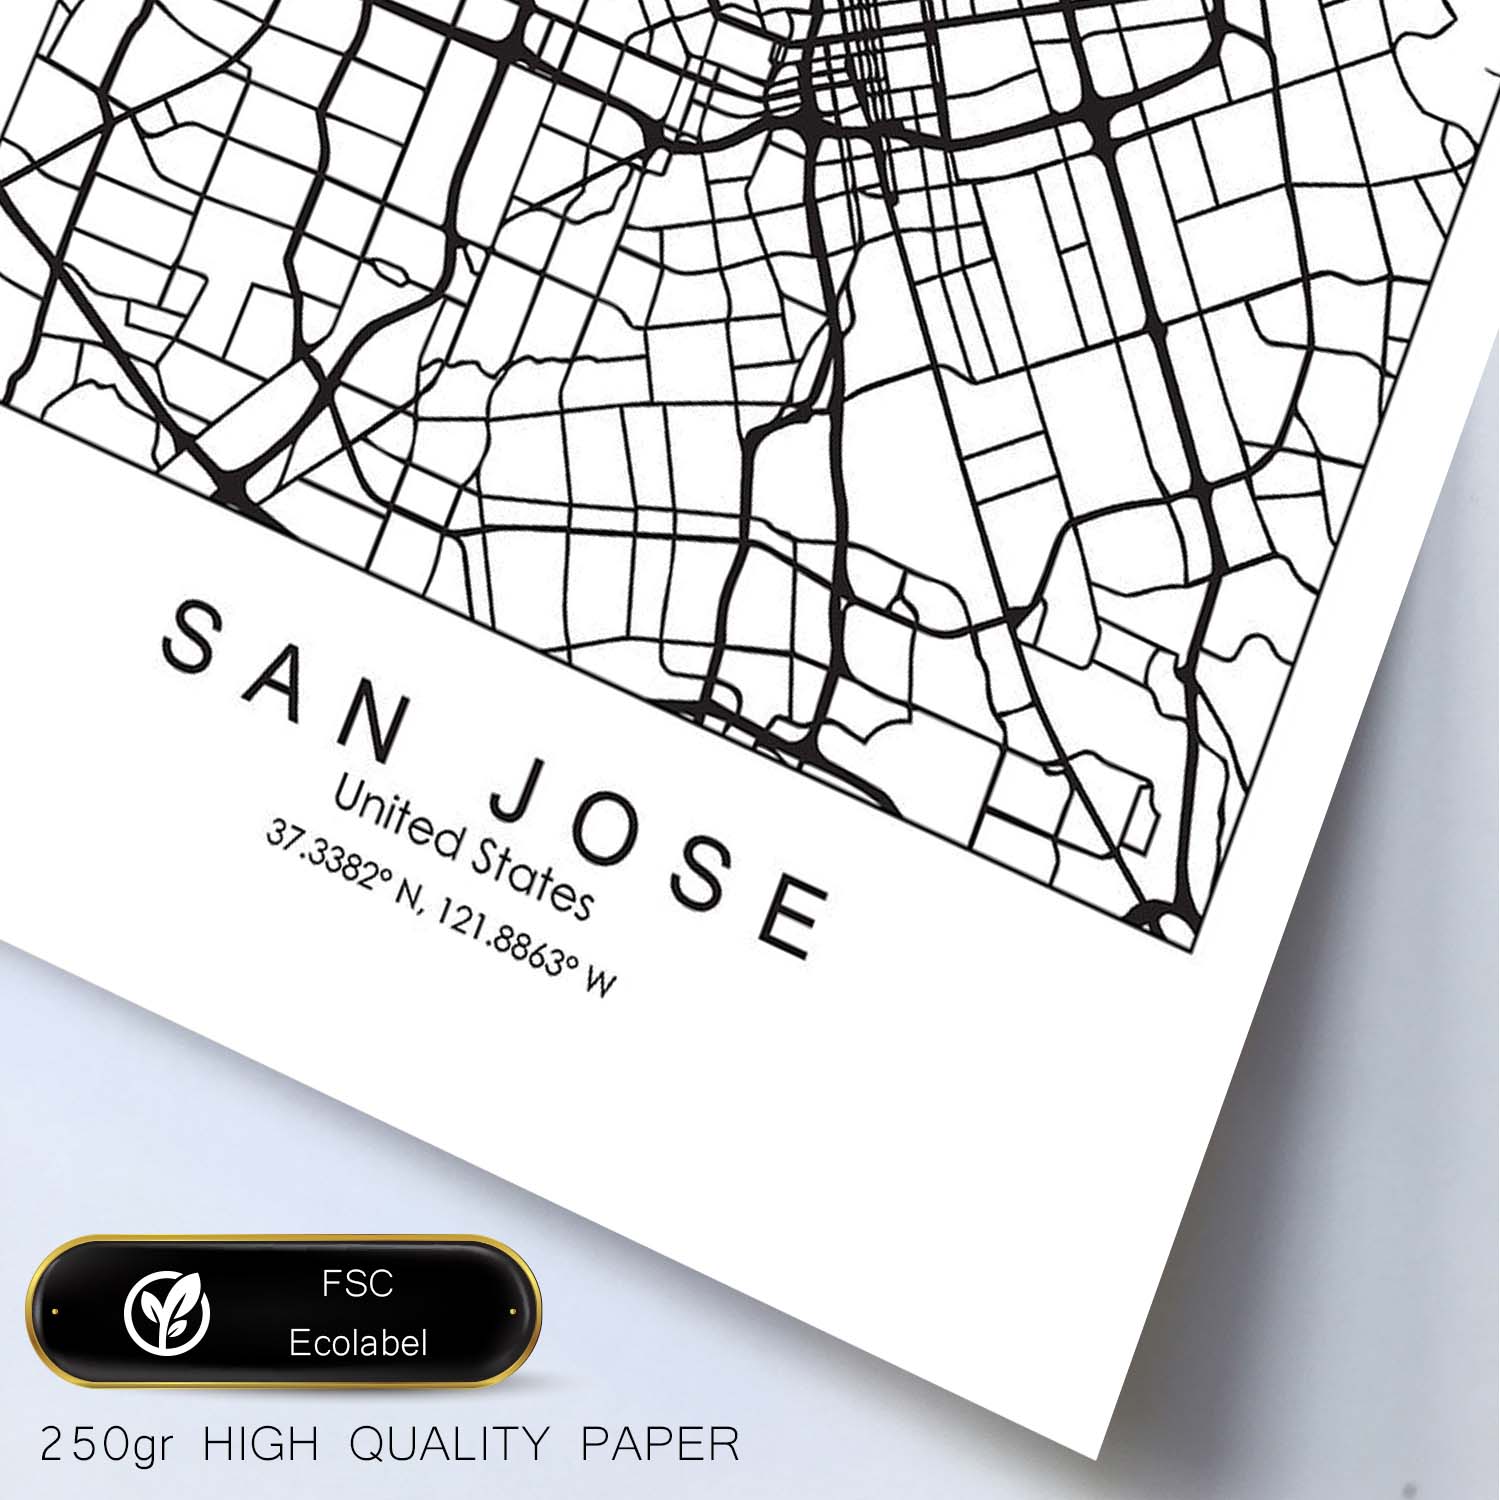 Poster con mapa de San Jose. Lámina de Estados Unidos, con imágenes de mapas y carreteras-Artwork-Nacnic-Nacnic Estudio SL